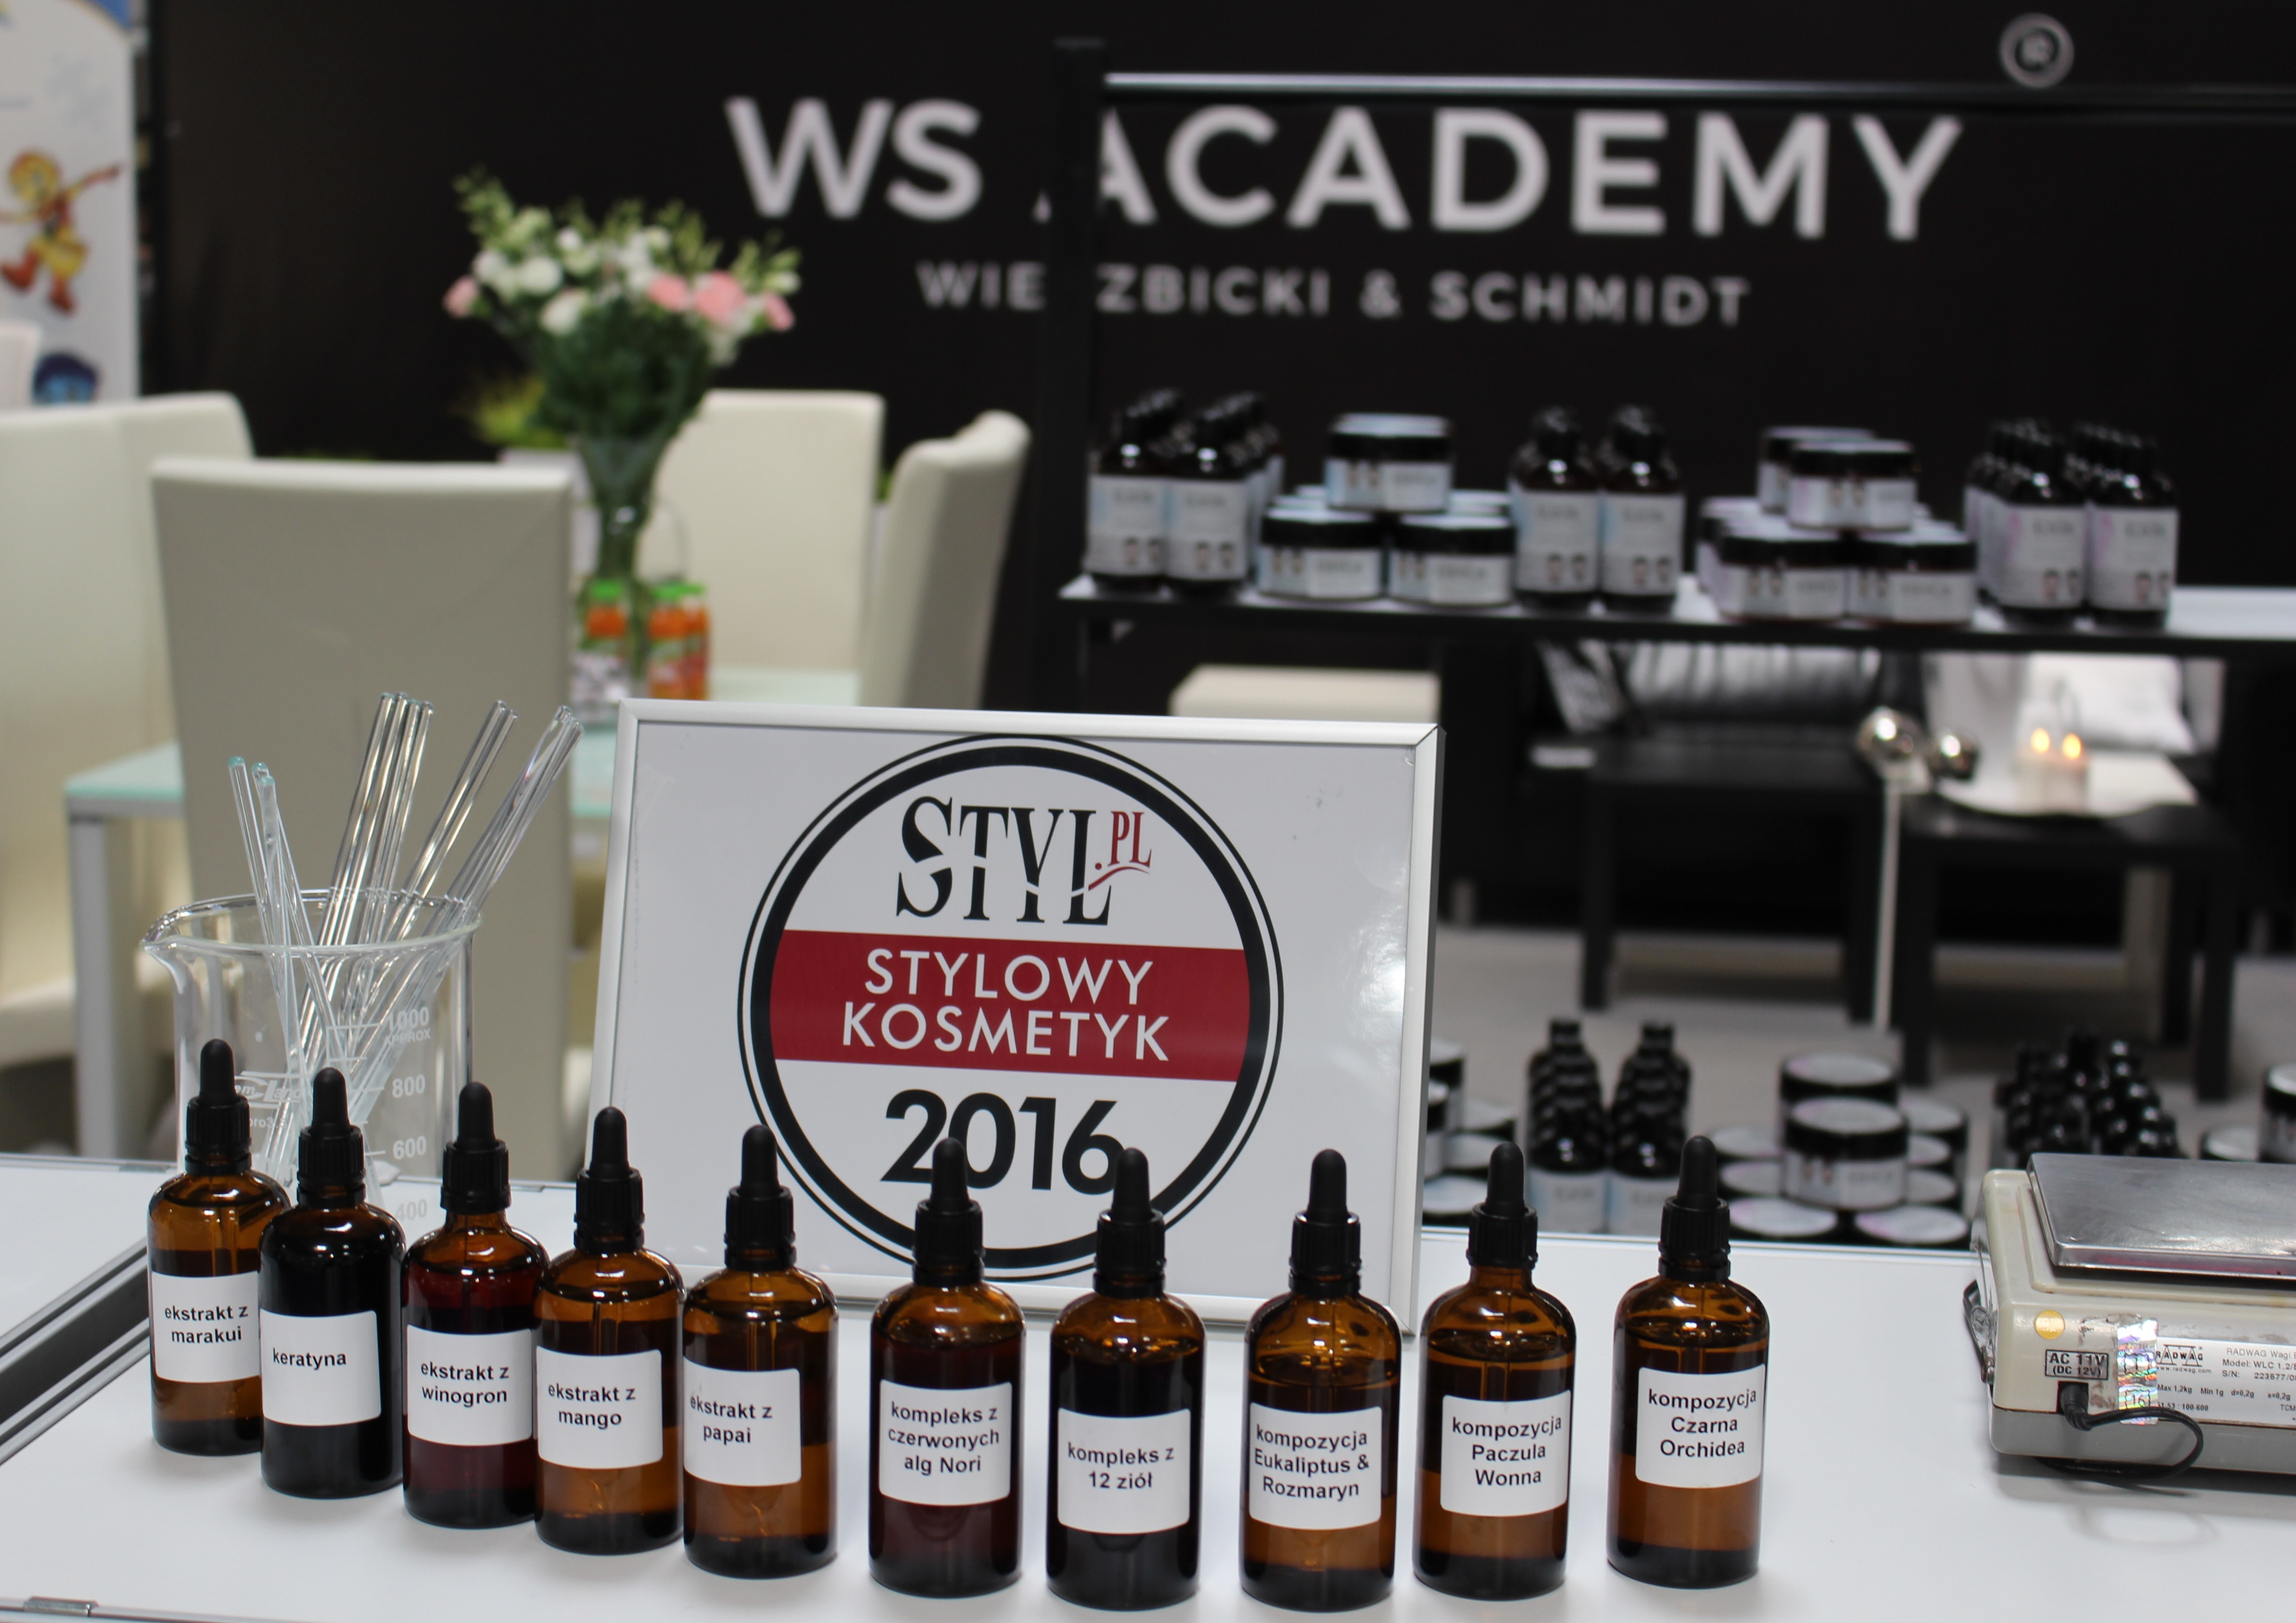 WS Academy Wierzbickim & Schmidt 